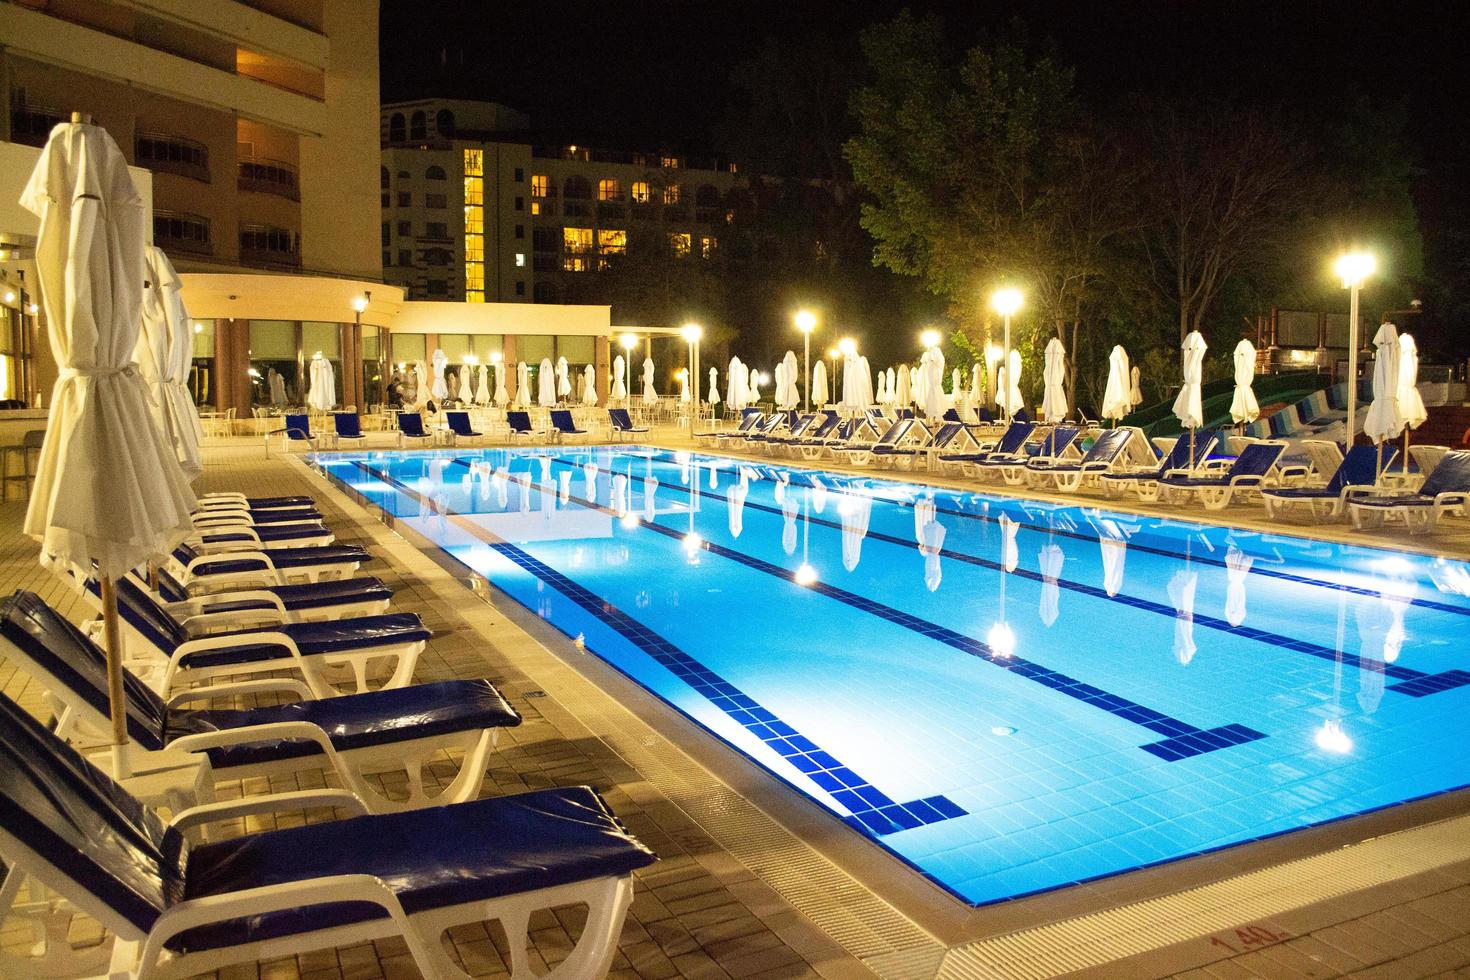 bulgarije, laguna park. 10.06.2022. avond zwembad in luxe hotel. zwembad met zon bedden en Gesloten paraplu's. foto